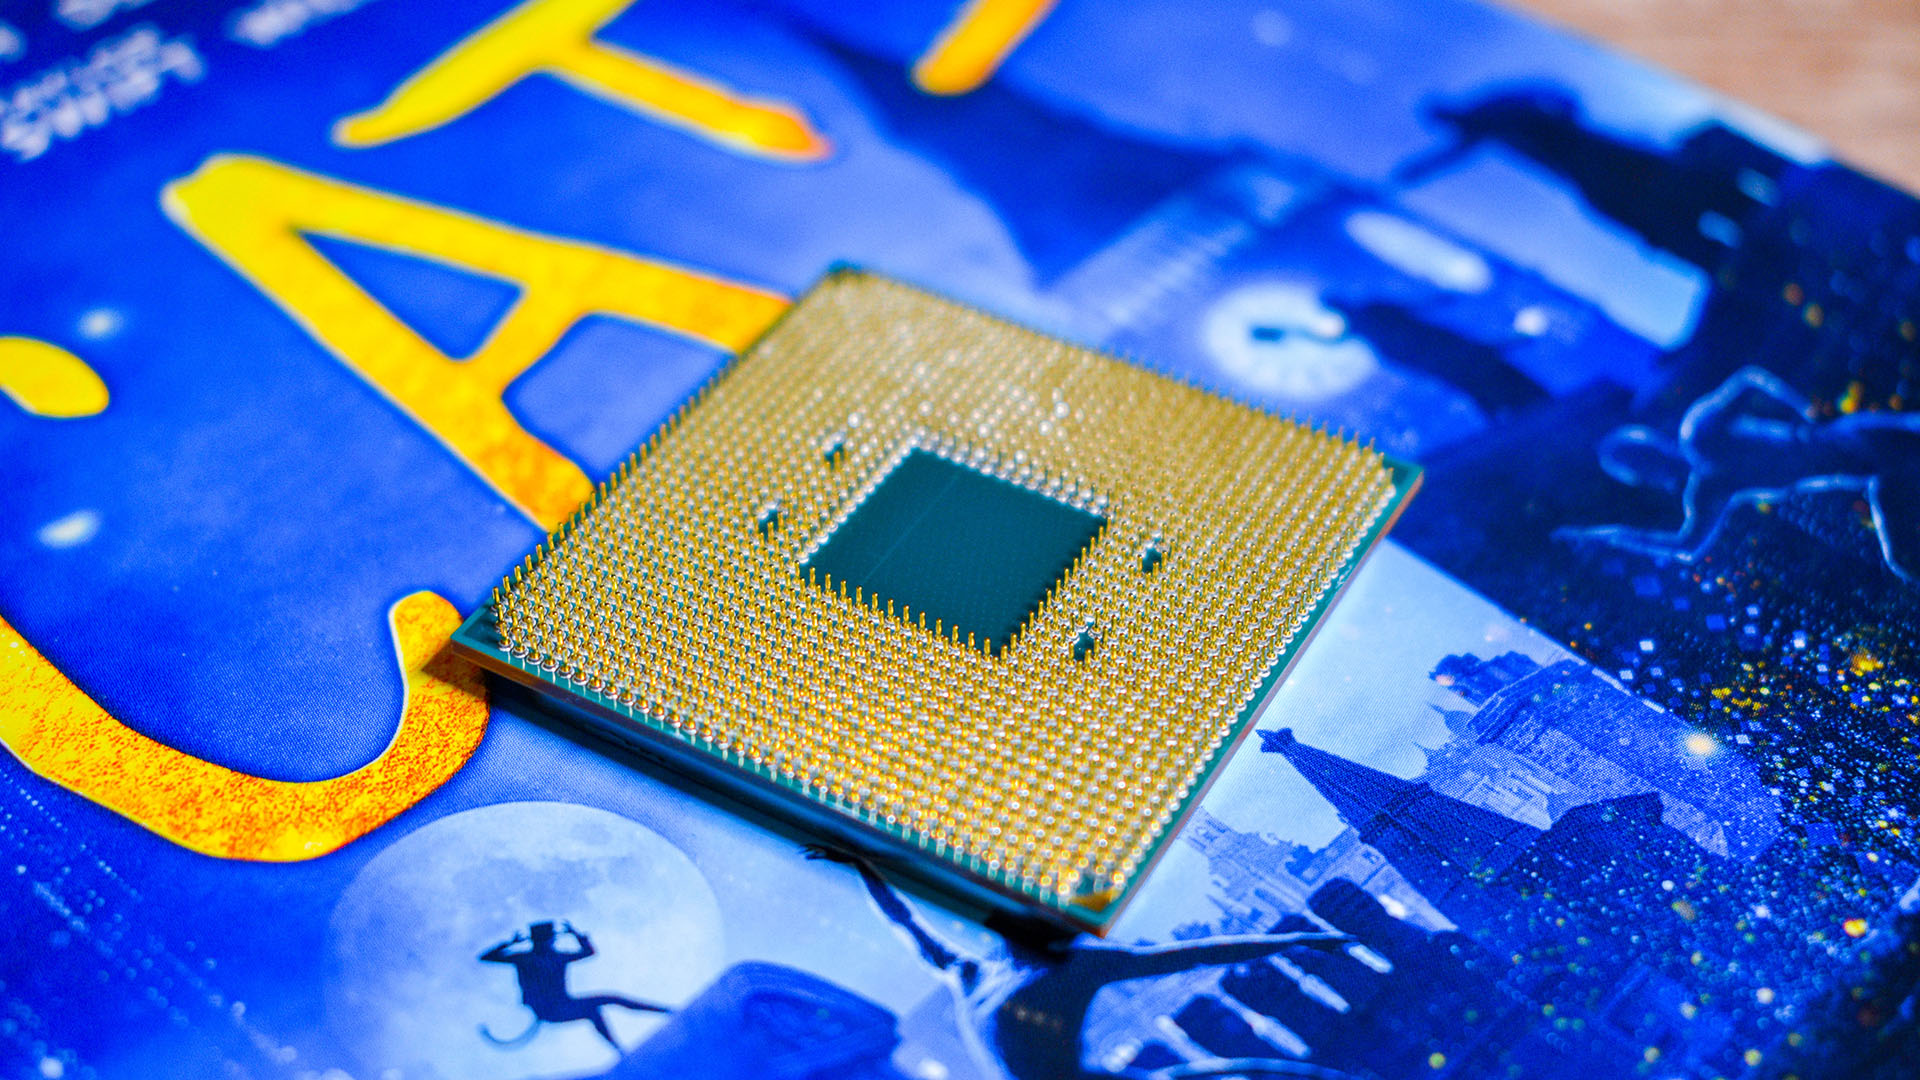 AMD может выпустить более быстрые версии процессоров Ryzen последнего поколения, которые идеально подходят для бюджетных сборок и обновлений.